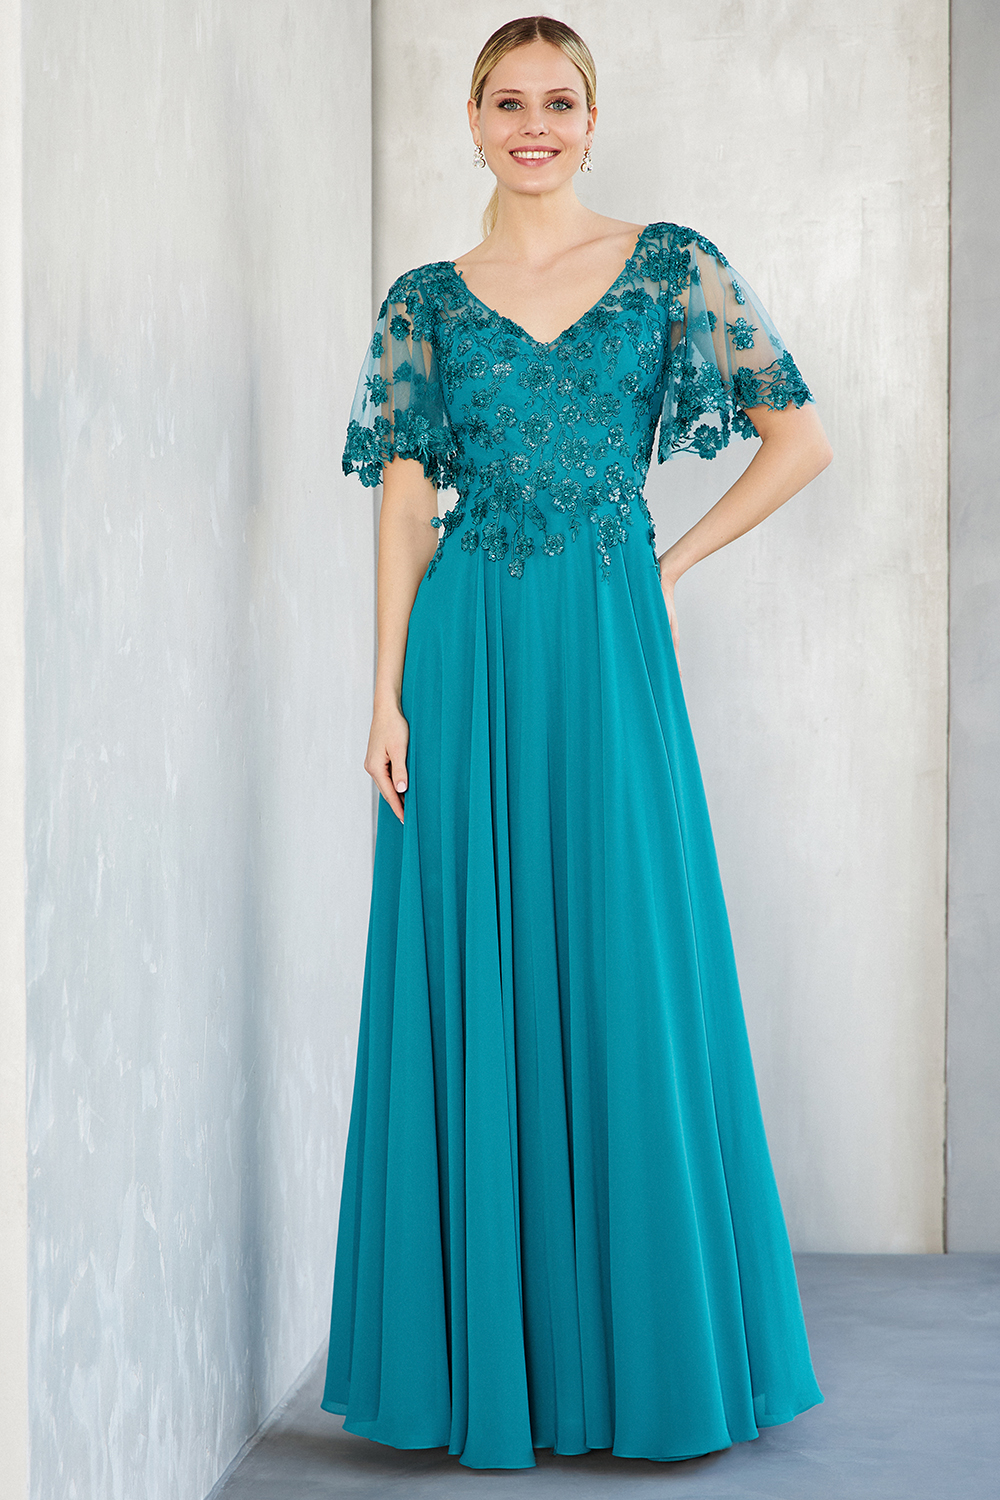 Κλασικά Φορέματα / Κλασικό φόρεμα μακρύ από μουσελίνα με δαντελένιο τοπ και μακριά τούλινα μανίκια